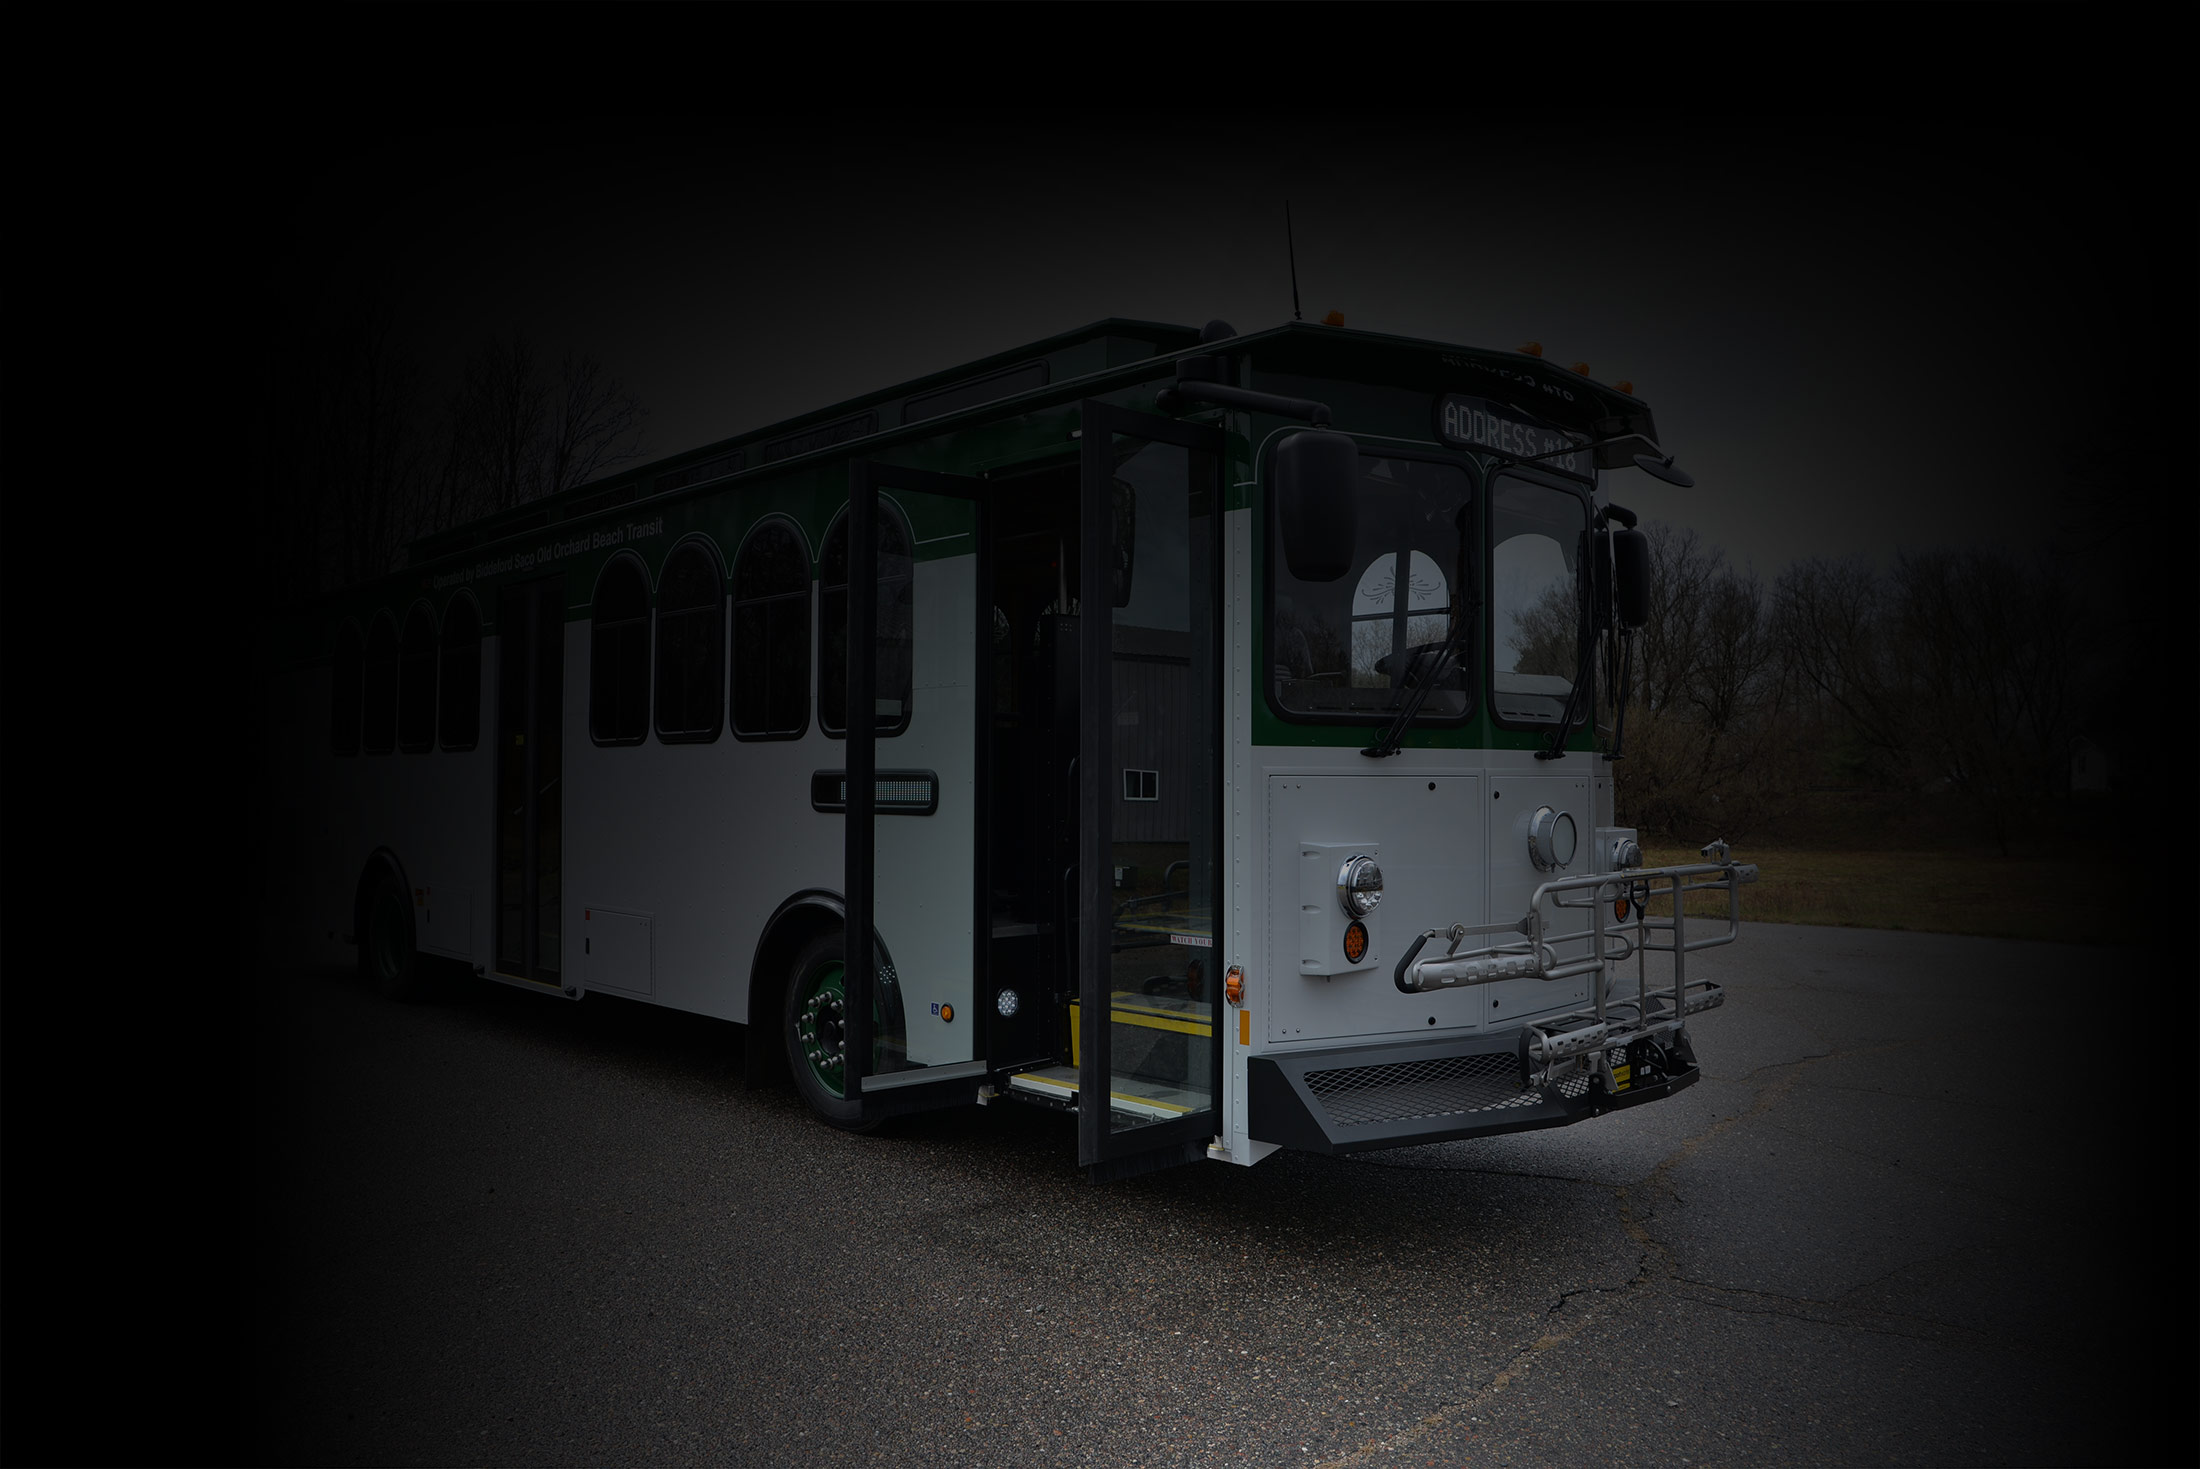 trolley bus